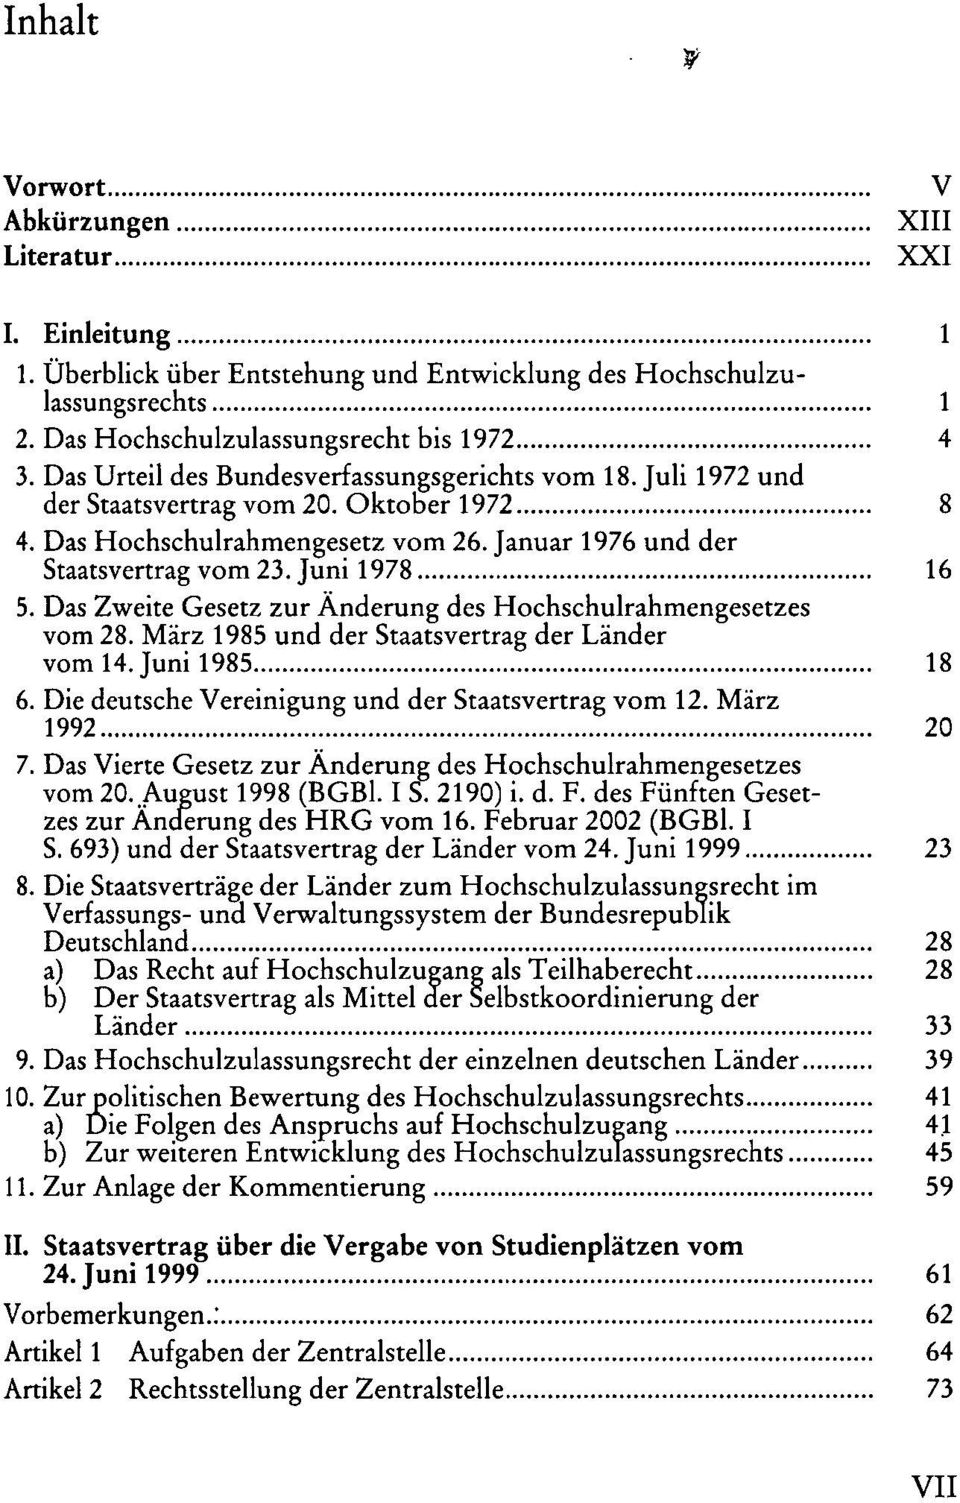 Das Zweite Gesetz zur Änderung des Hochschulrahmengesetzes vom 28. März 1985 und der Staatsvertrag der Länder vom 14. Juni 1985 18 6. Die deutsche Vereinigung und der Staatsvertrag vom 12.